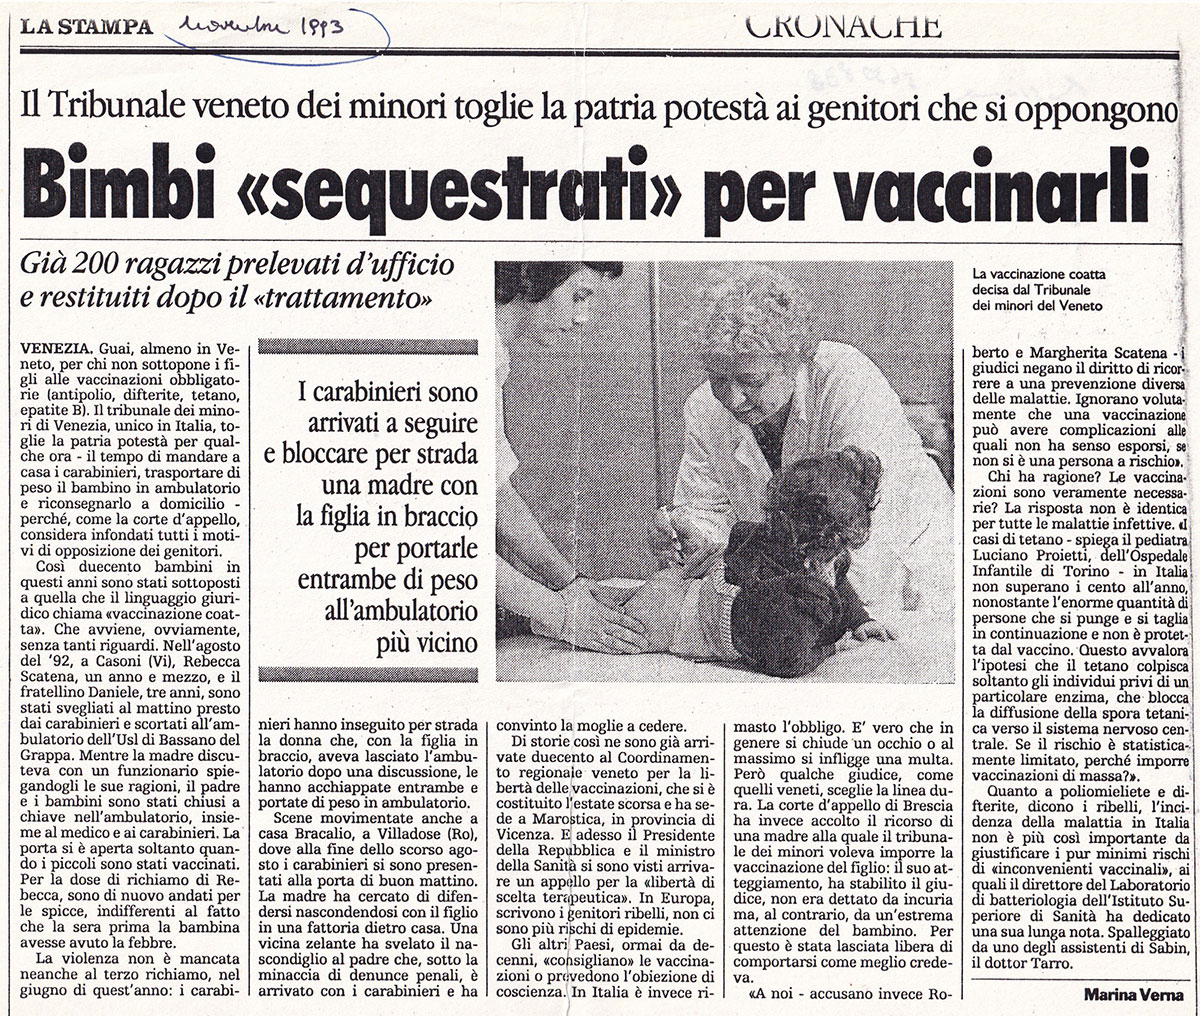 Bimbi «sequestrati» per vaccinarli. La Stampa, novembre 1993